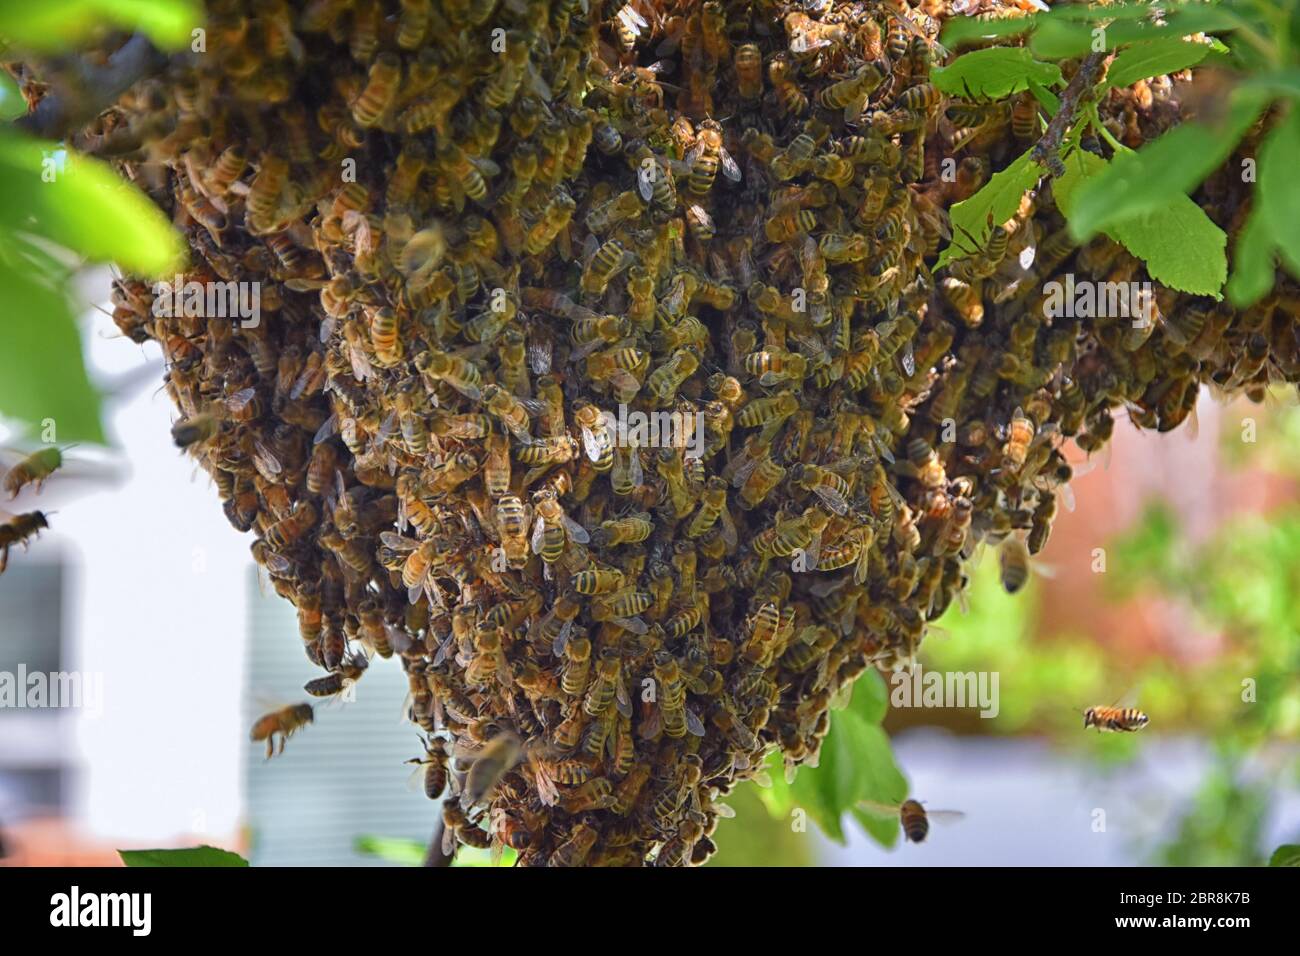 Sciame di Miele Bees, un insetto volante eusociale all'interno del genere Apis mellifera della vongola di api. Melone Carniolano italiano su un reggiseno di prugne Foto Stock